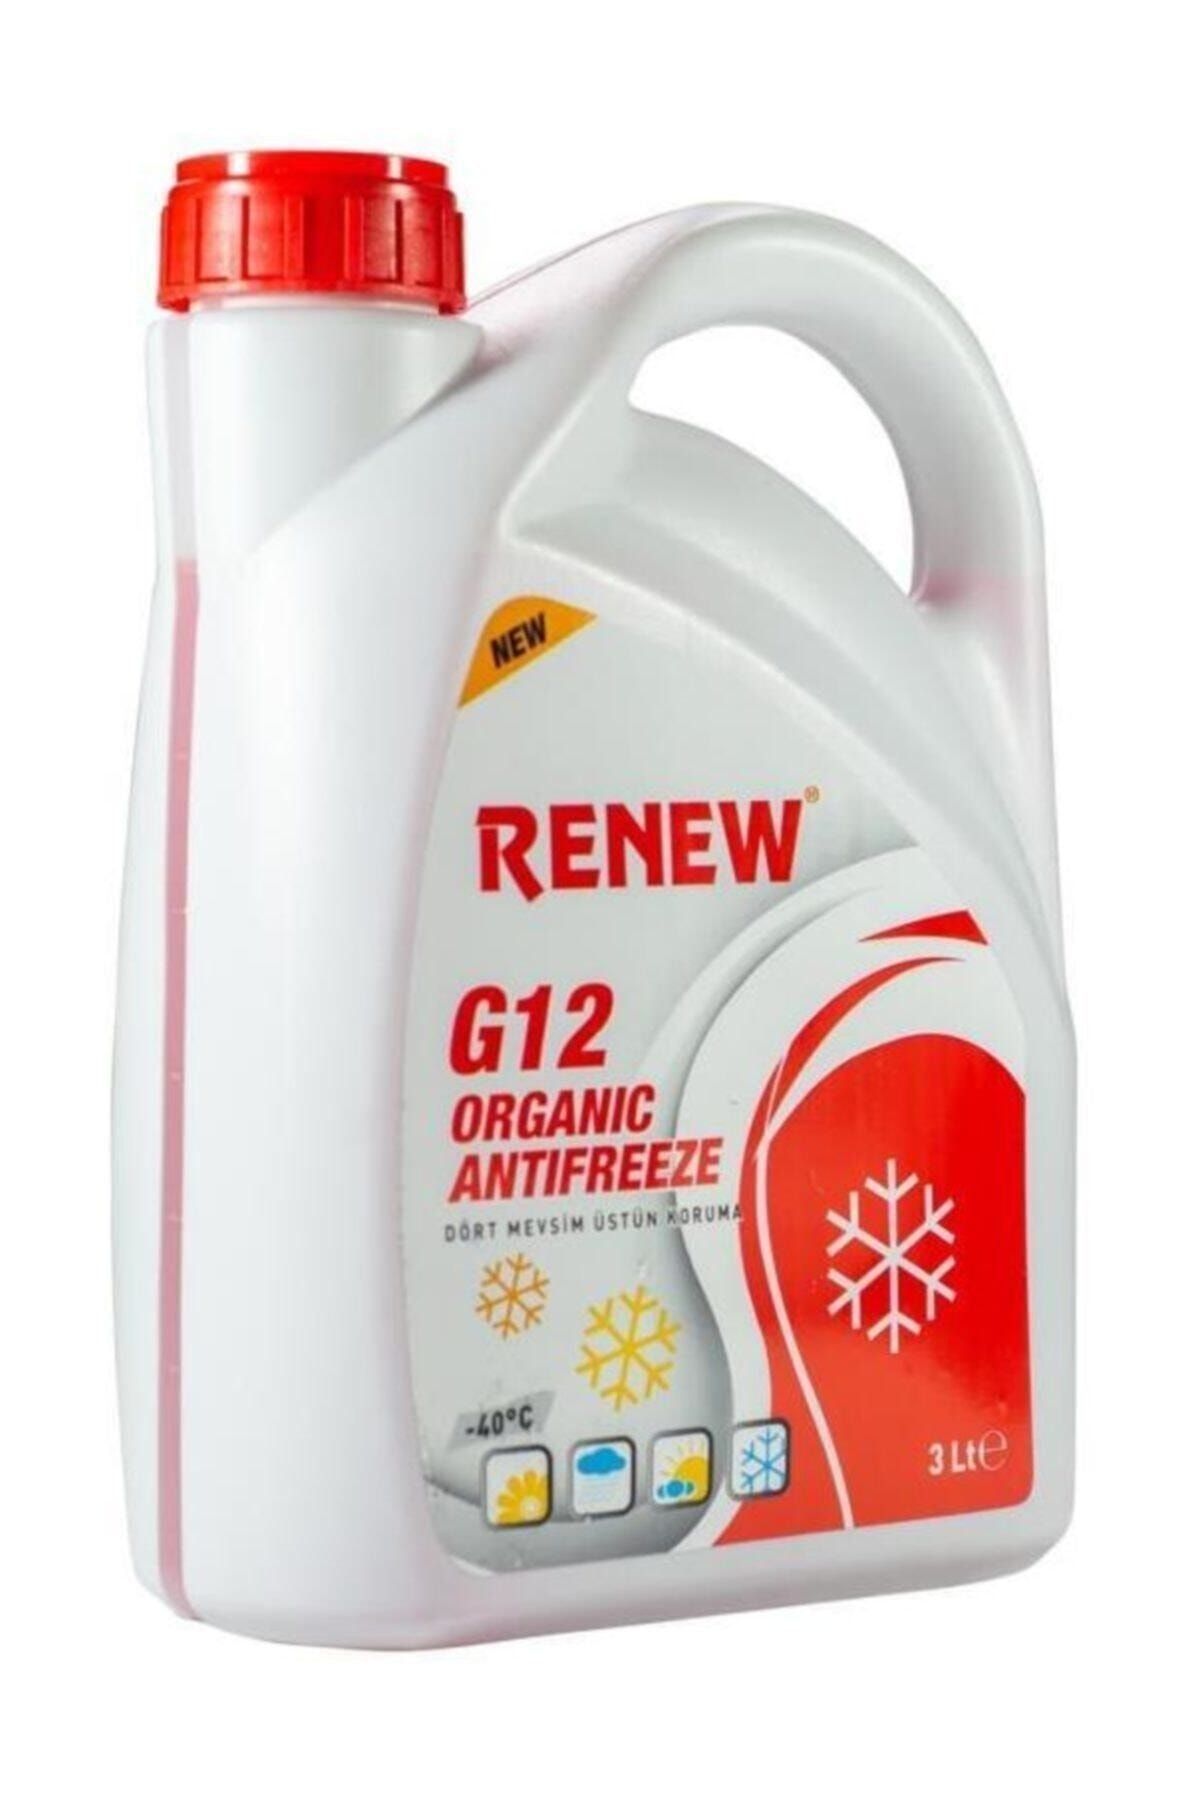 Renew G12 Organik Kırmızı Antifriz -40 Derece 3 Litre